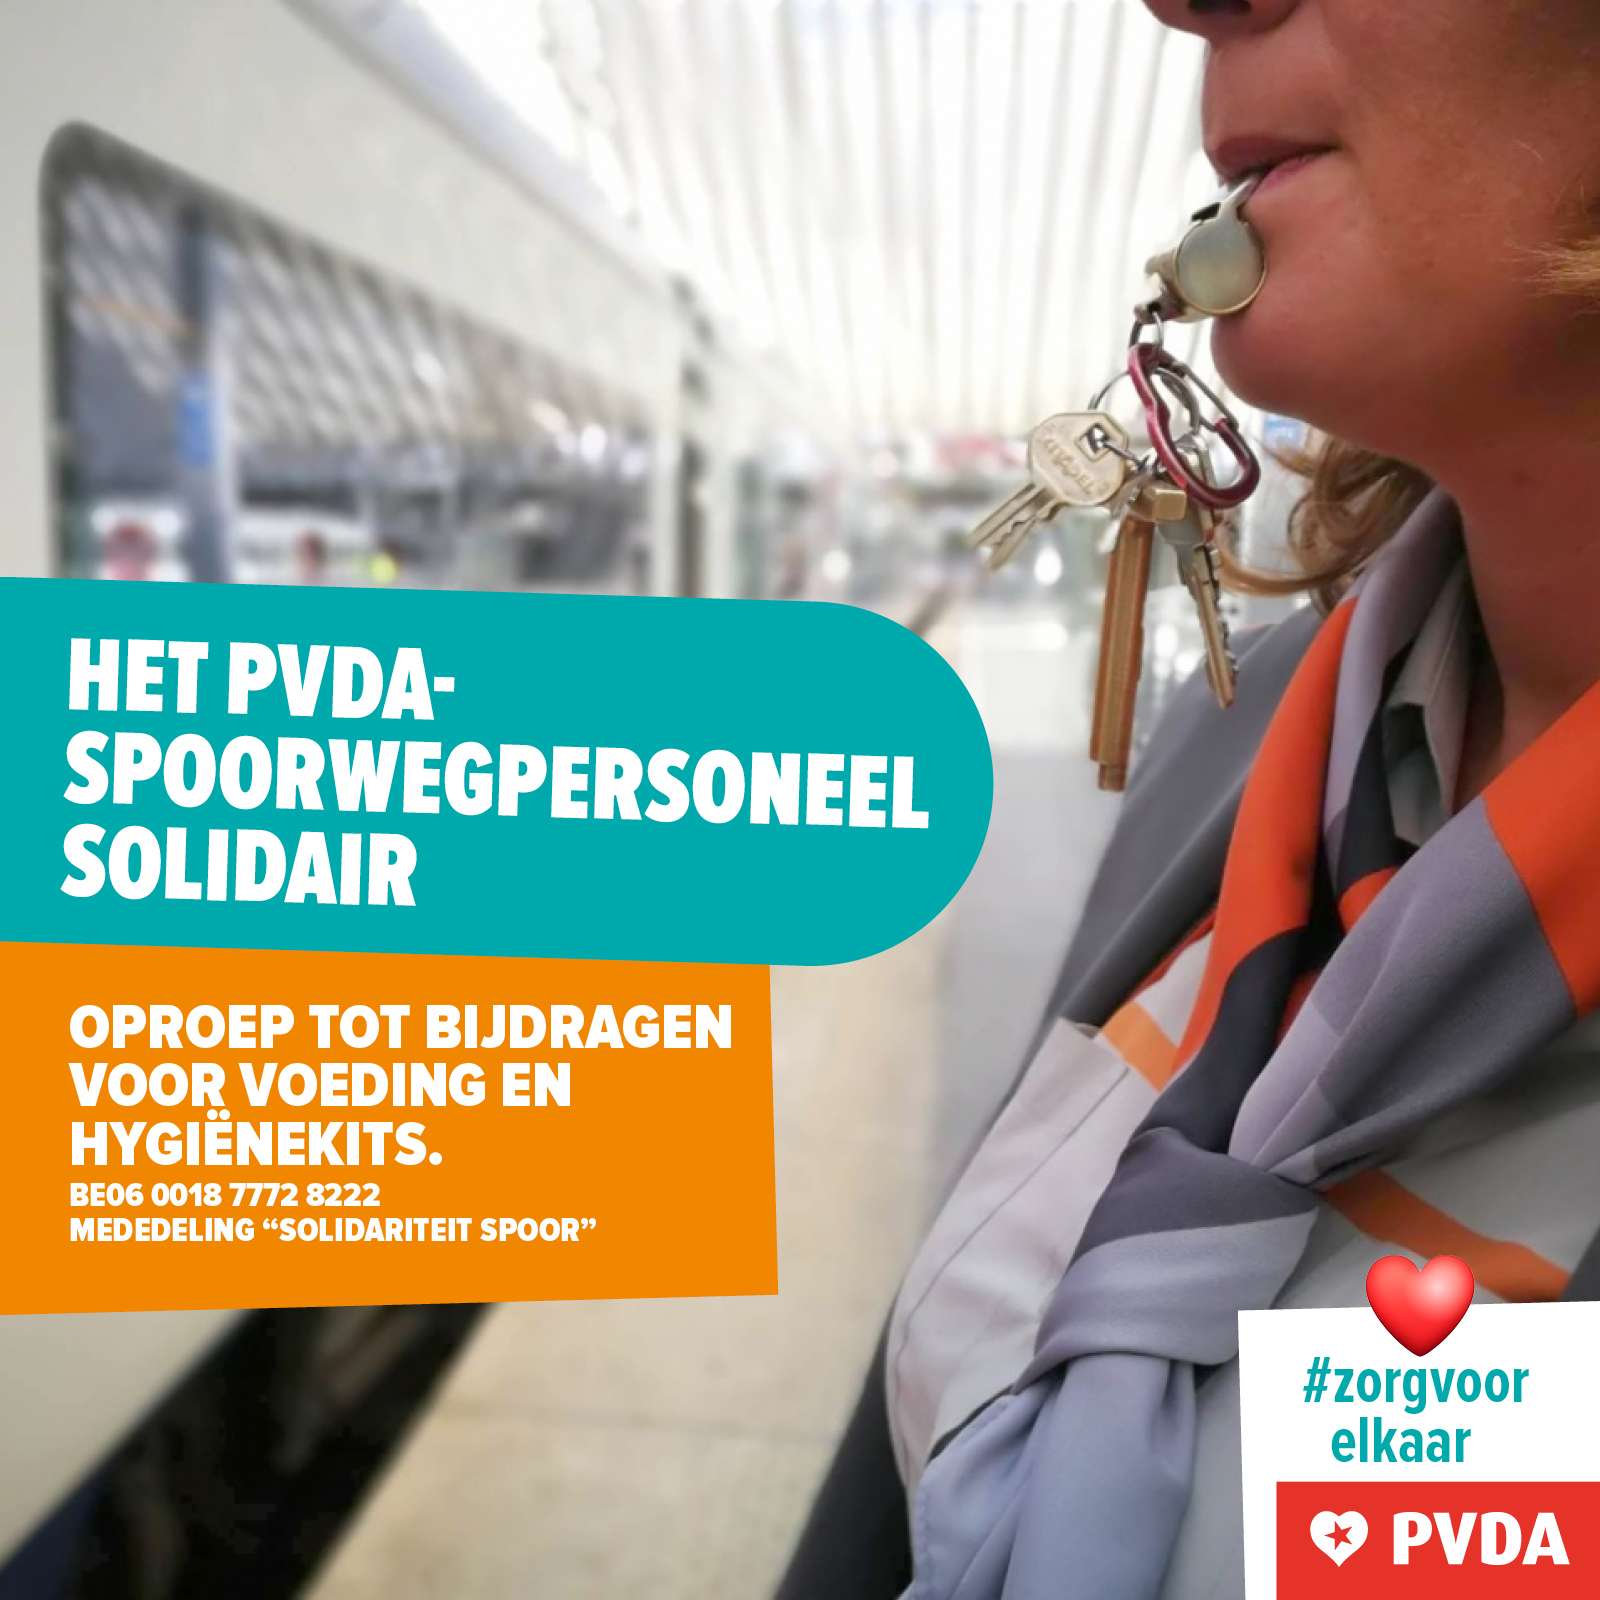 PVDA-spoorwegpersoneel doet een oproep om voedsel en hygiënekits te schenken